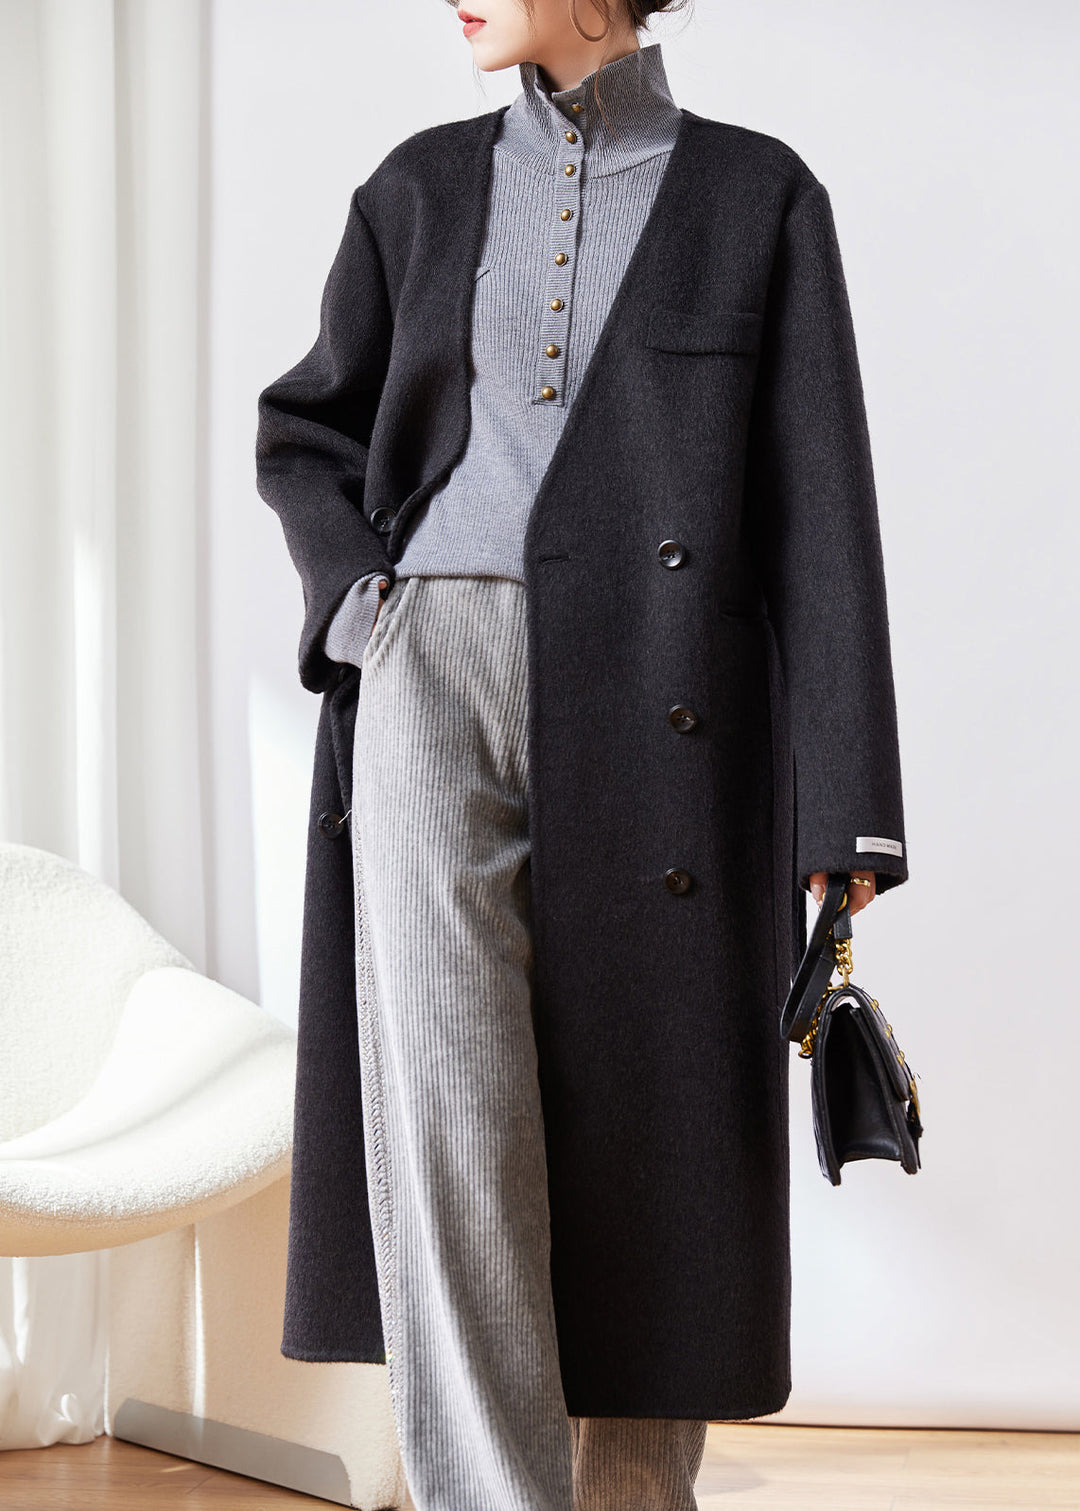 Black Button Patchwork Woolen Coat V Neck Long Sleeve